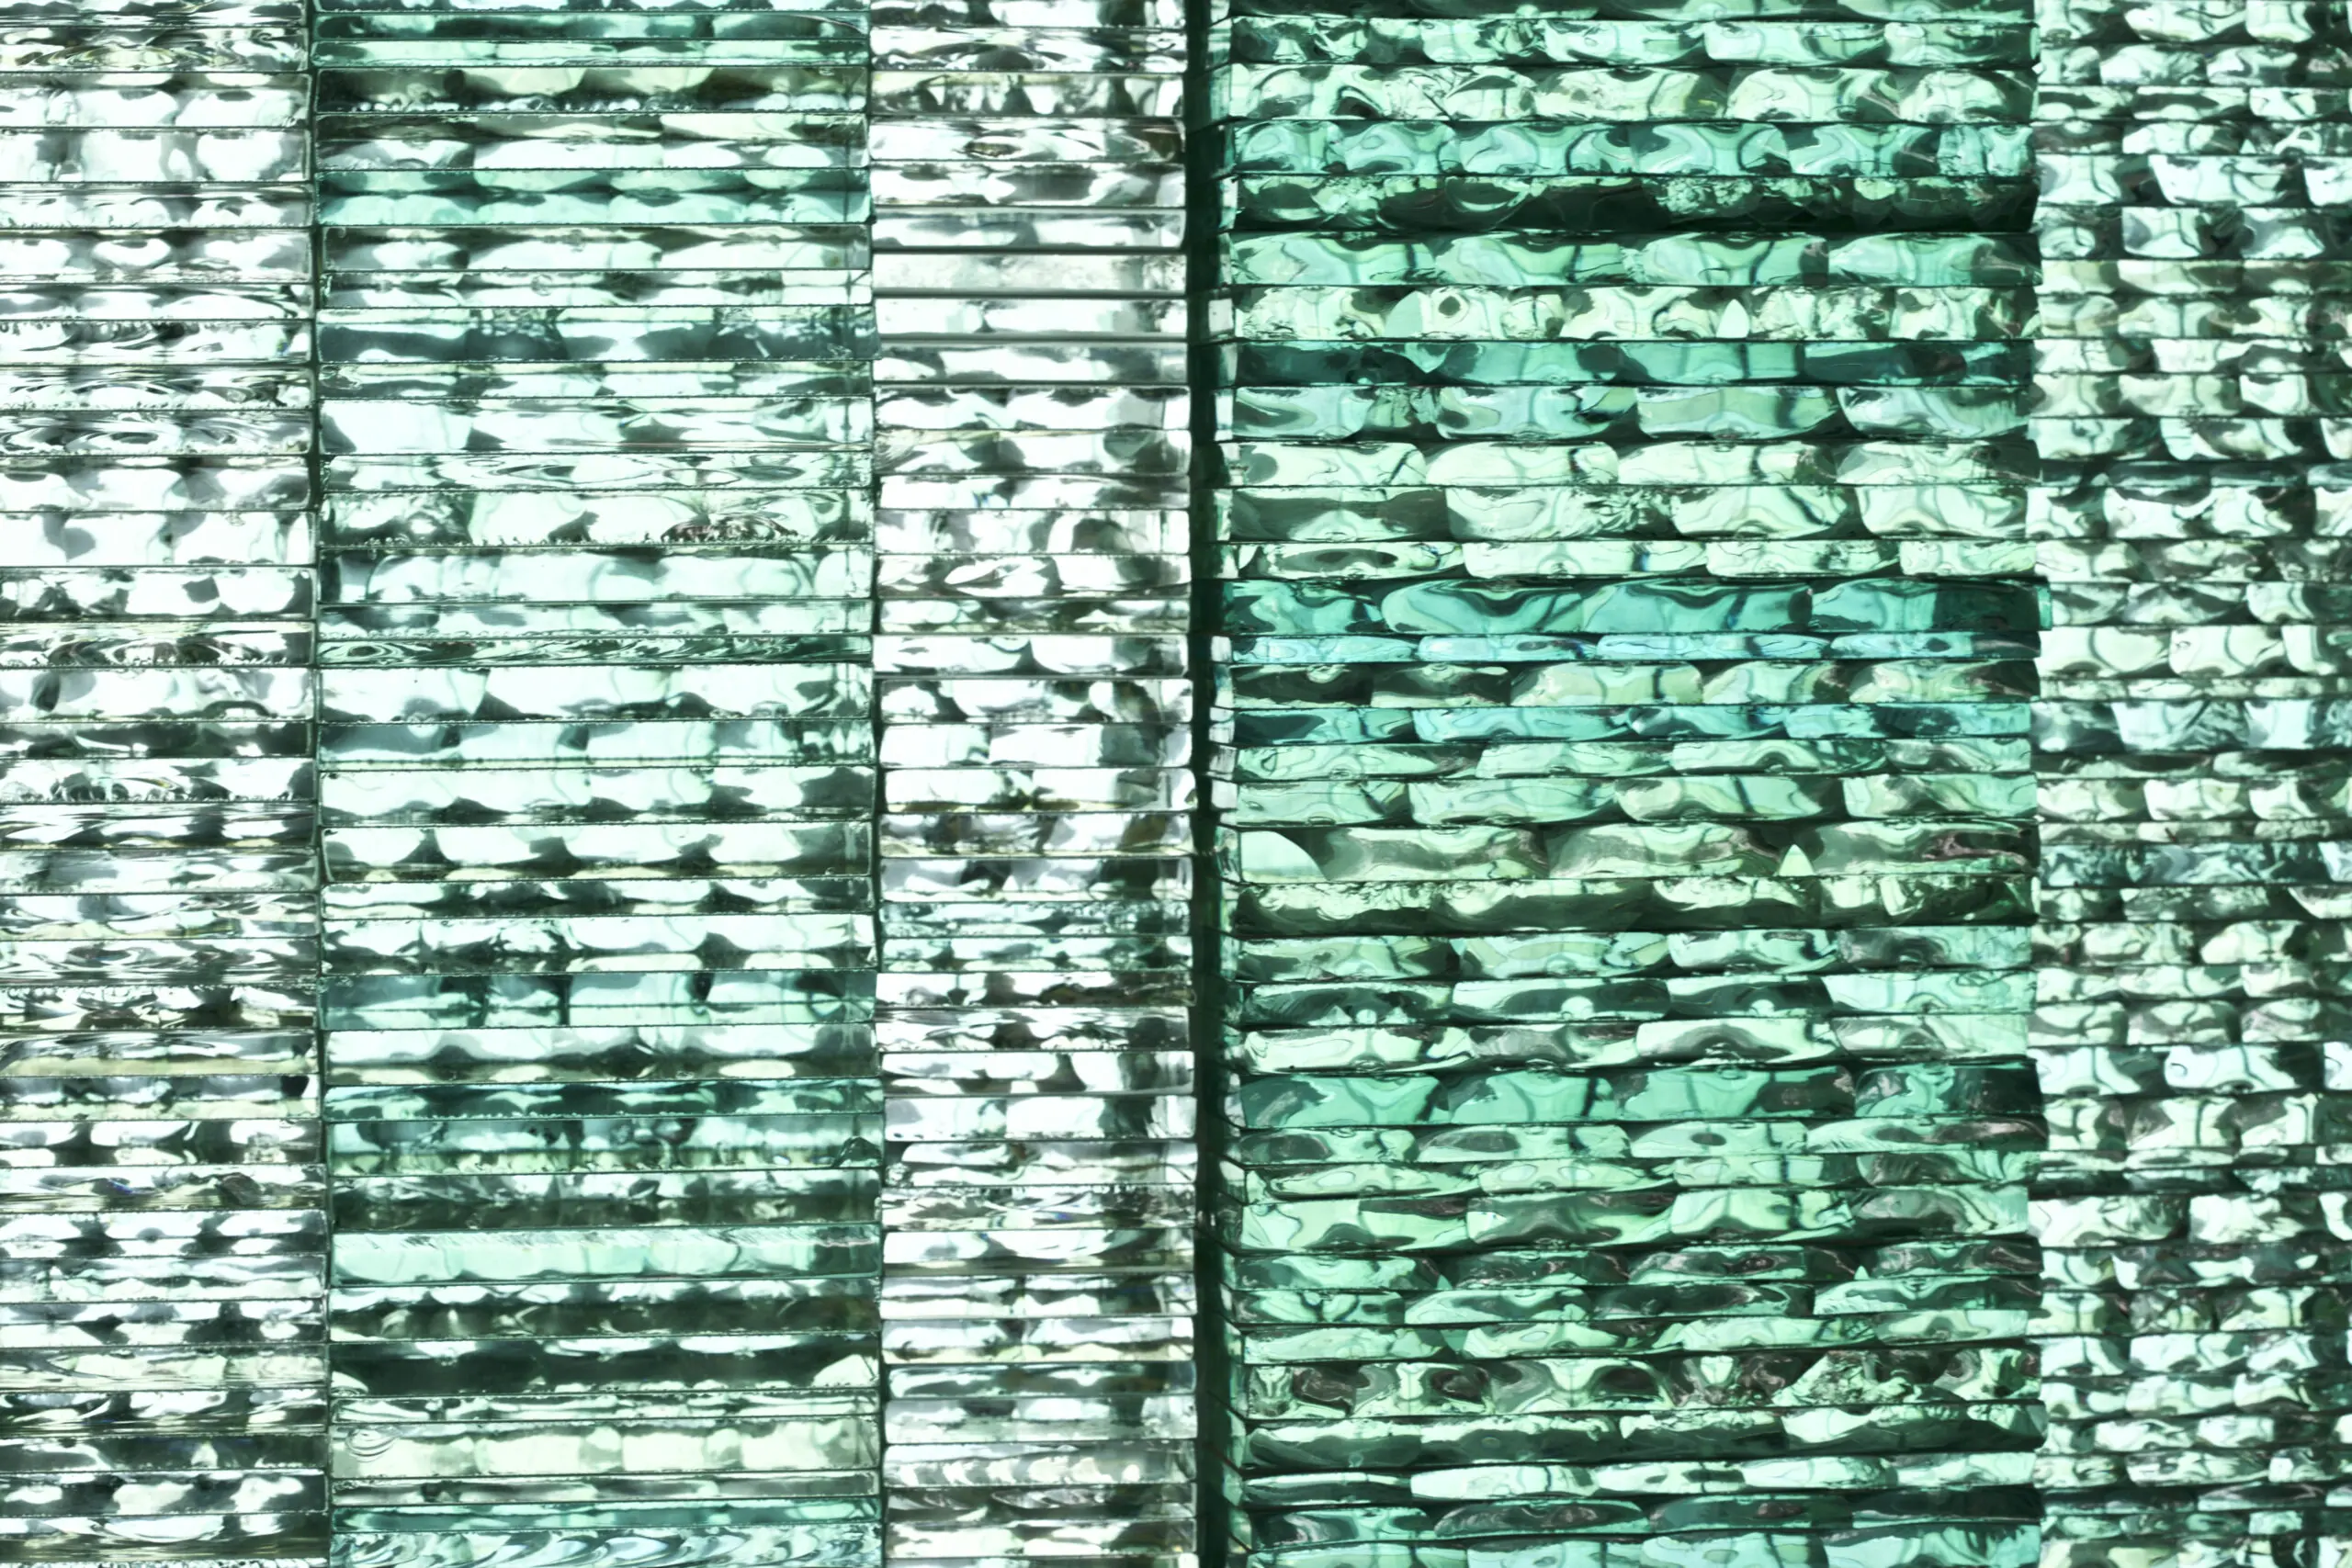 Wandbild (4084) Jade brick präsentiert: Kreatives,Details und Strukturen,Abstrakt,Detailaufnahmen,Sonstige Architektur,Sonstiges Kreatives,Architekturdetails